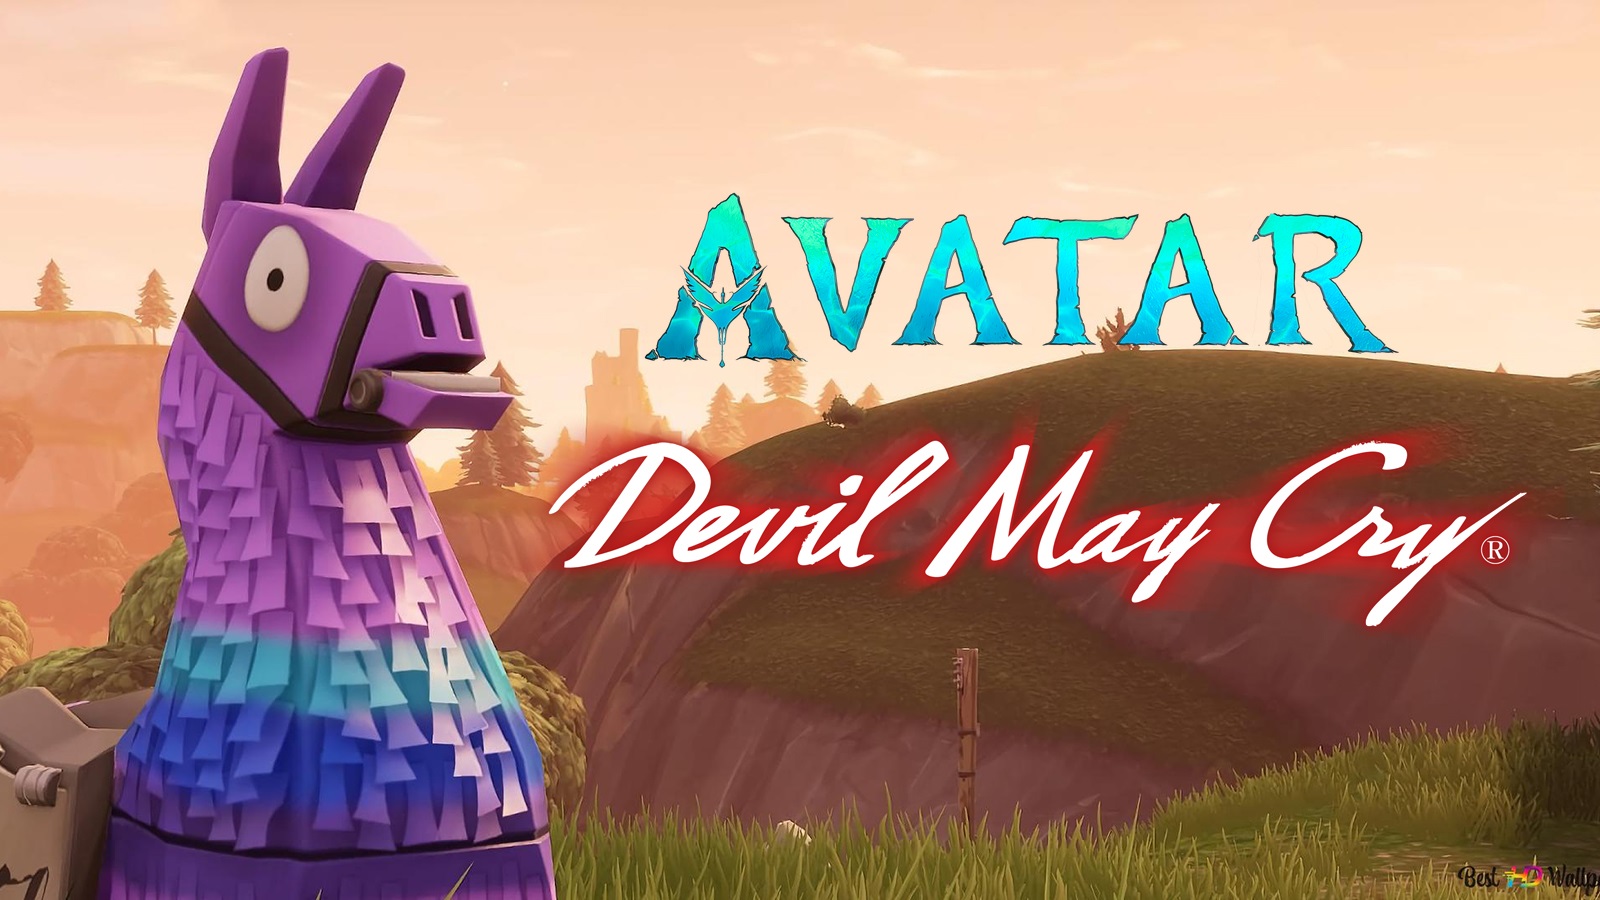 Fortnite-lek onthult samenwerking met Devil May Cry en Avatar